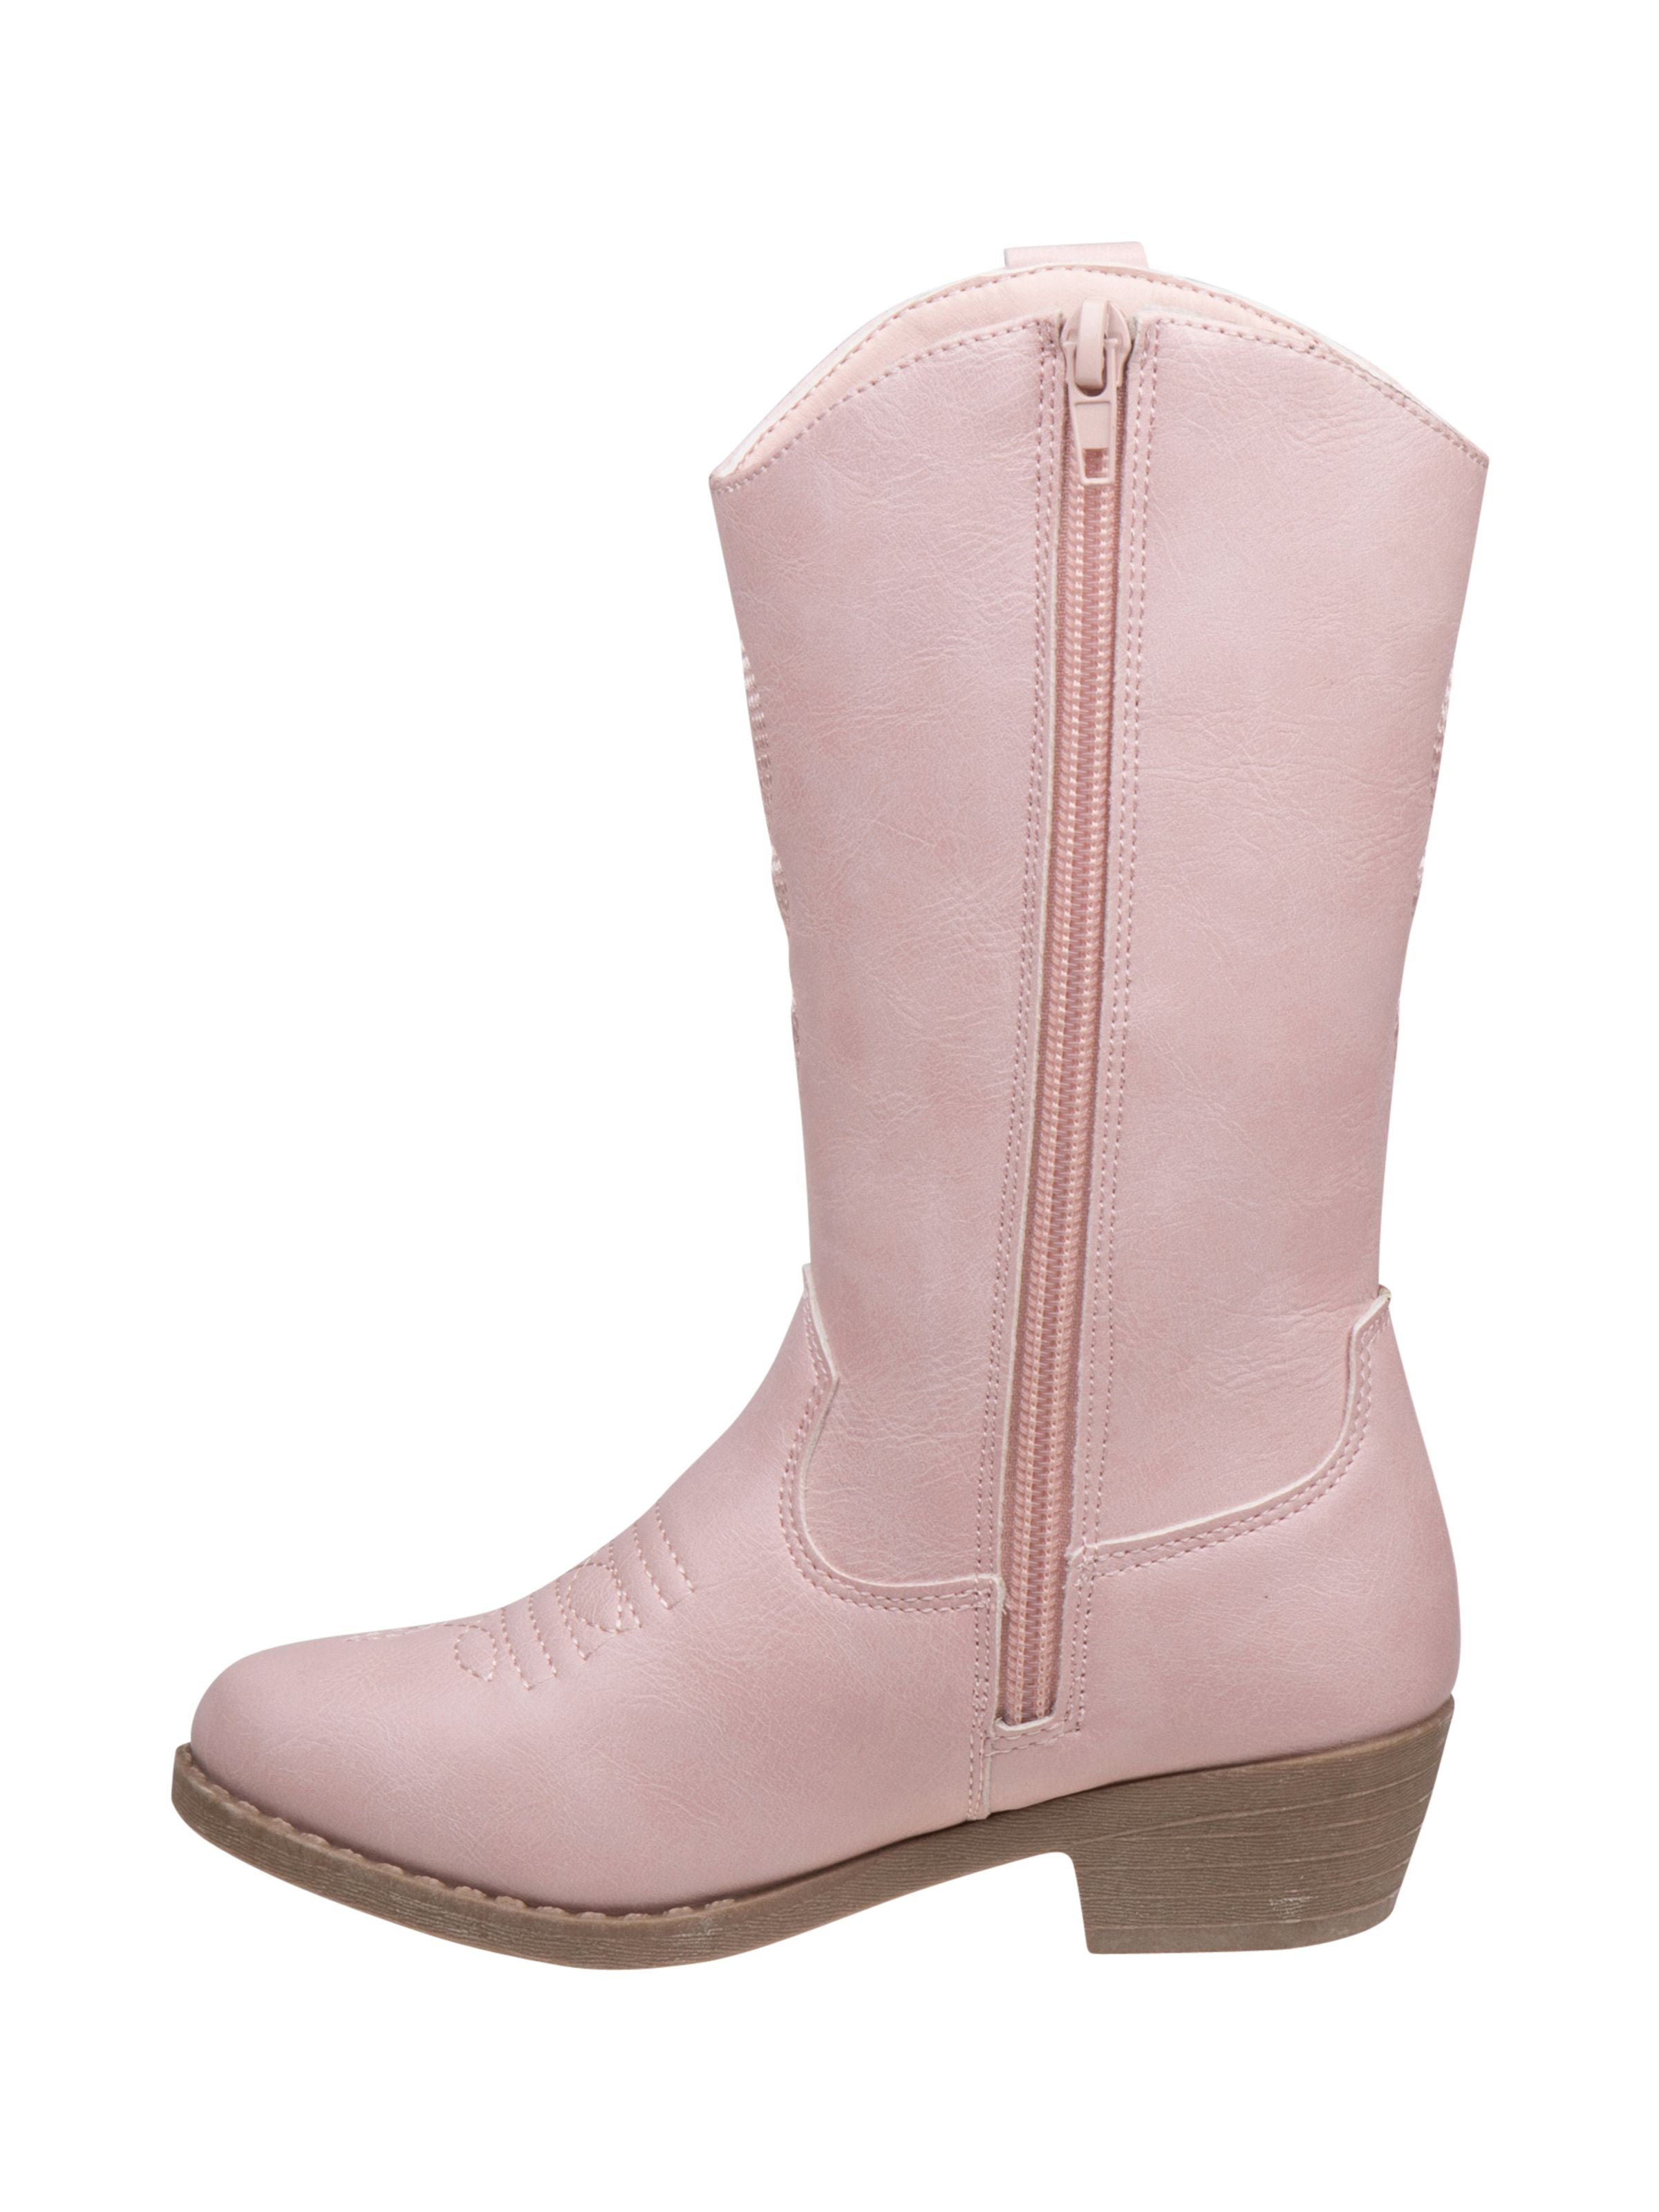 visit Get cold patron Kensie Girl zip up boot with heel - Walmart.com